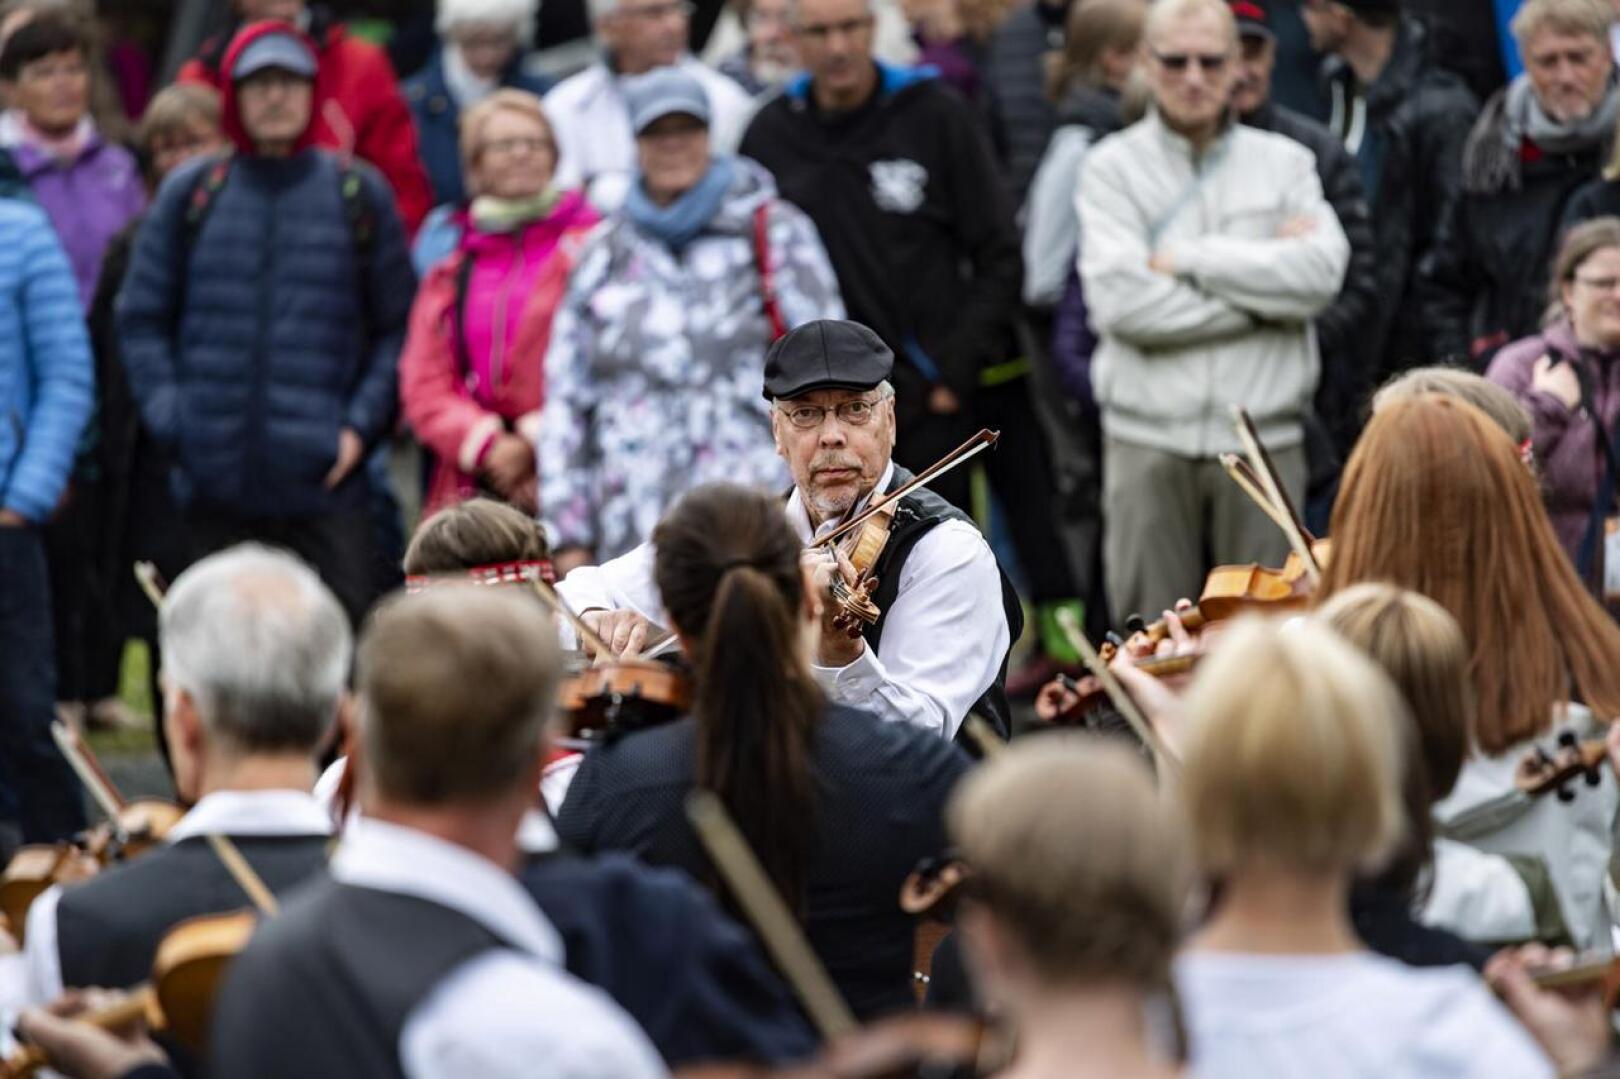 Kaustislainen viulunsoitto halutaan Unescon listalle. Mauno Järvelä johti soittoa ennen avajaiskulkuetta Kaustisen kansanmusiikkijuhlilla.